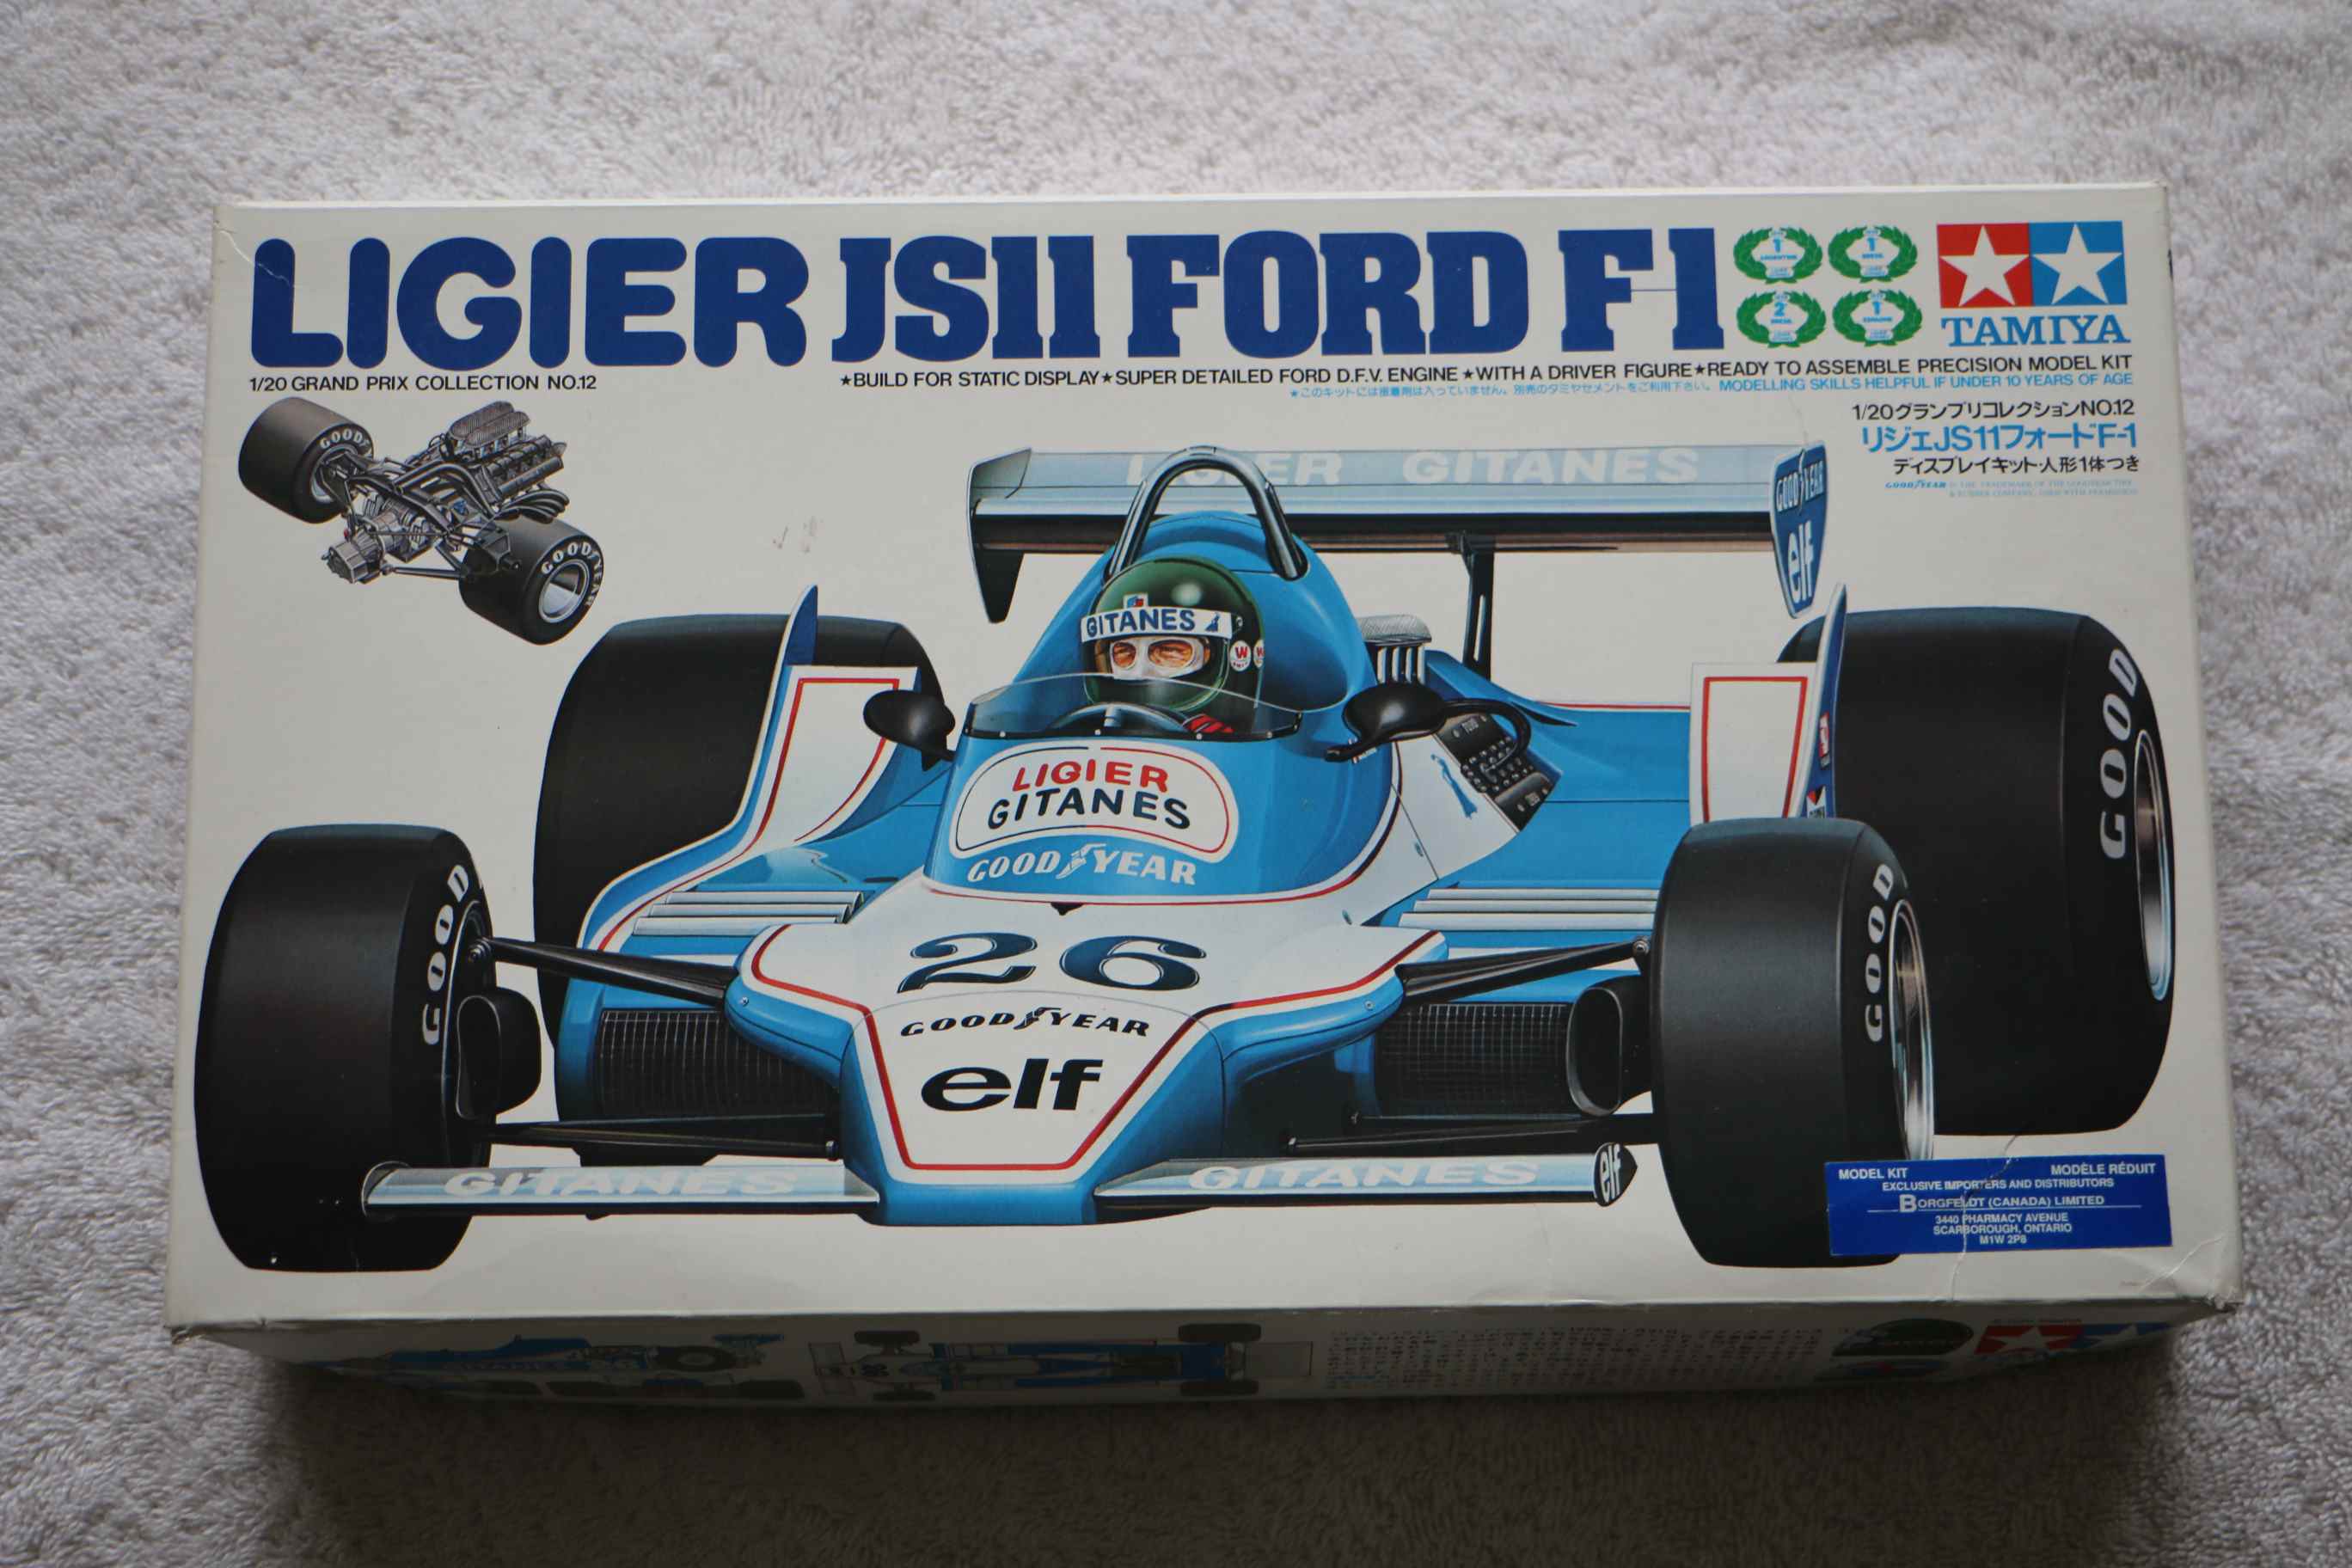 Tamiya LIGIER Js11 Ford F1 1/20 Grand Prix No.12 Model Kit 20012 1979 for sale online